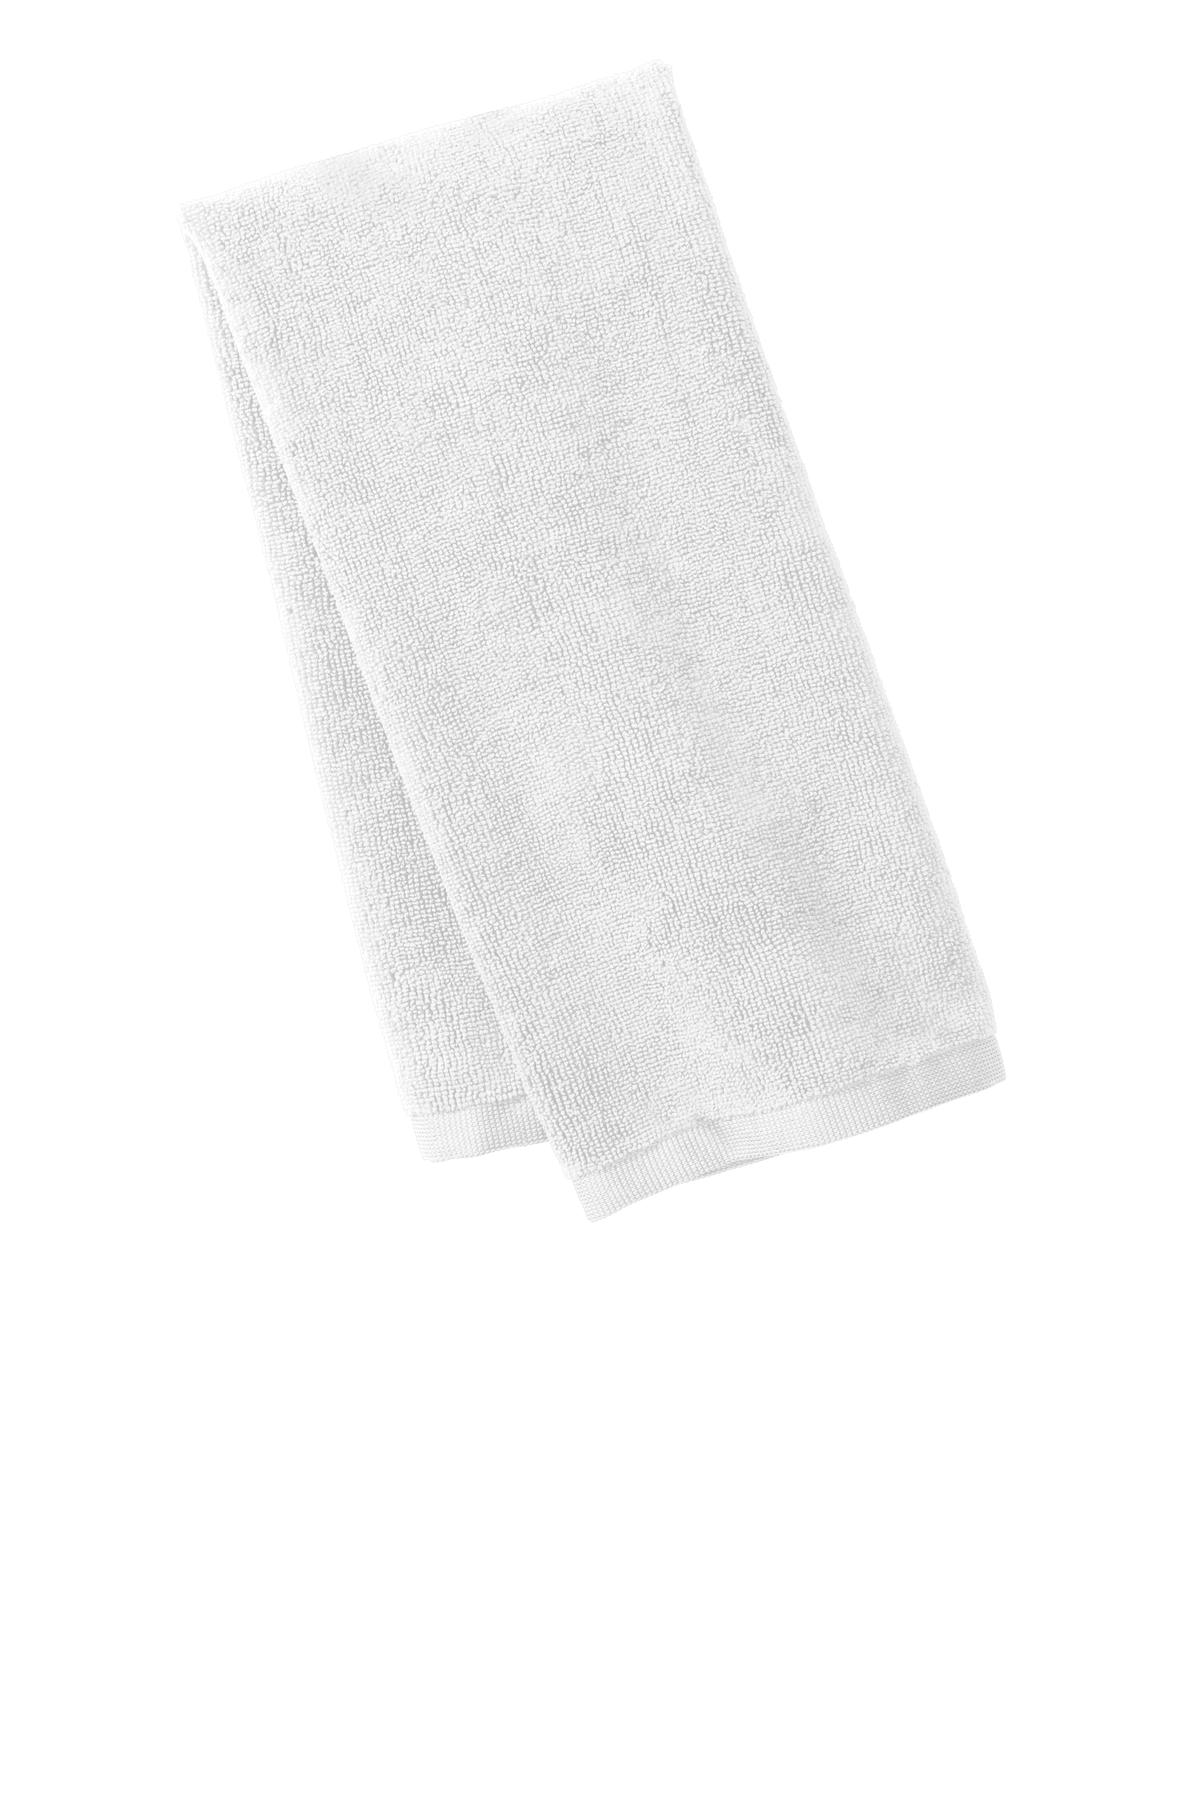 Port Authority Microfiber Golf Towel. TW540